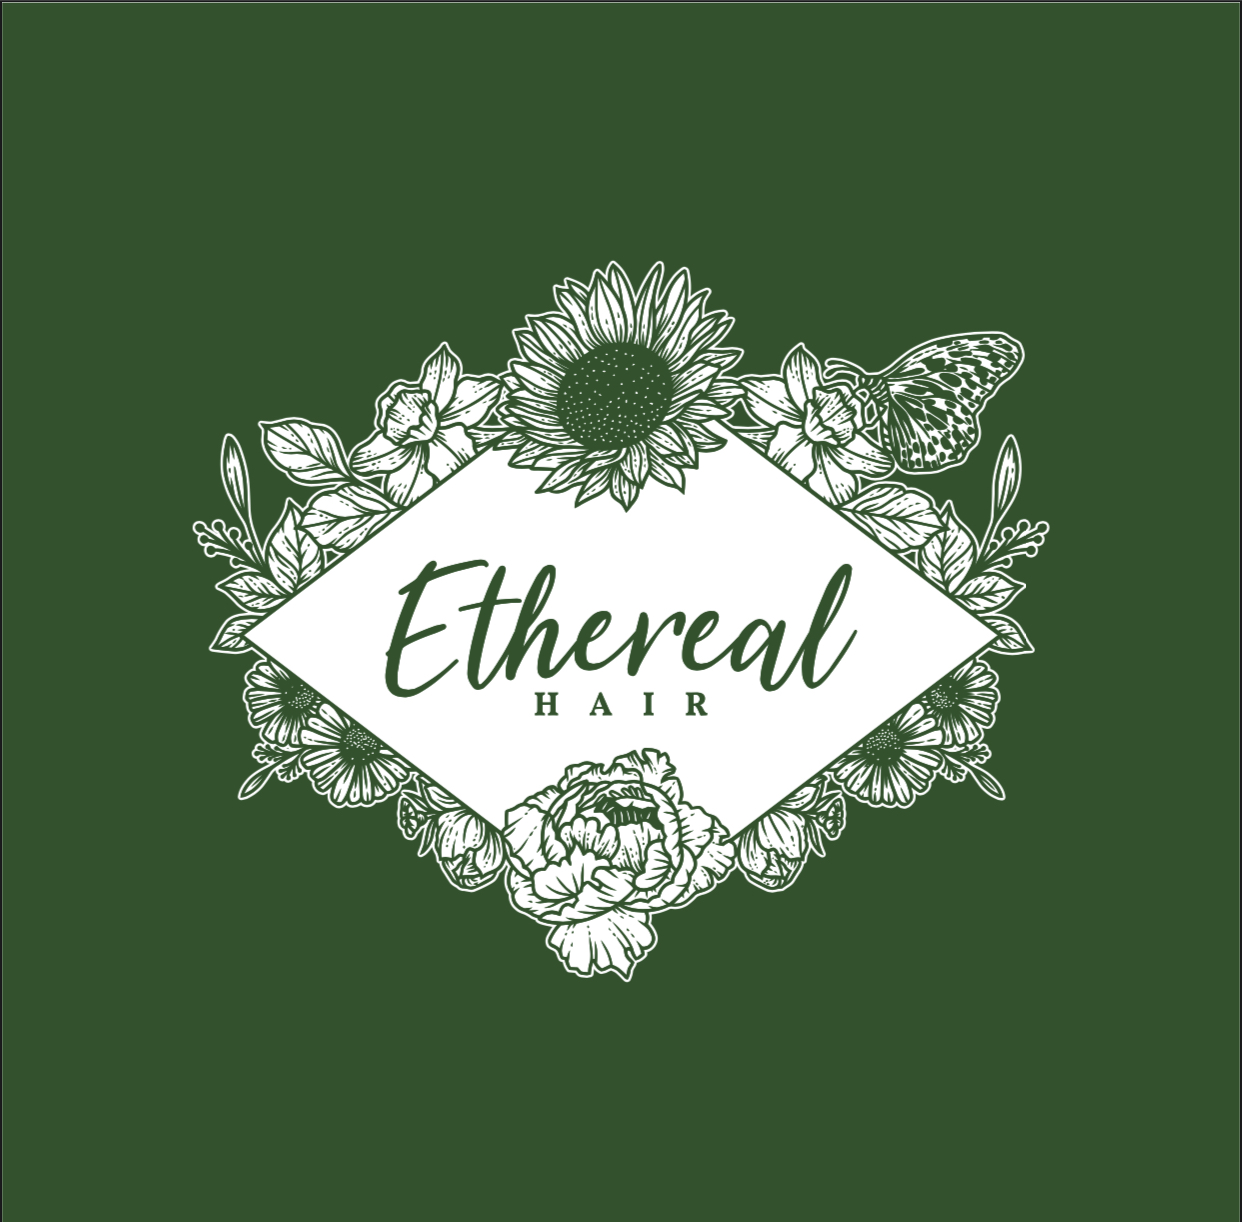 Ethereal Hair Salon